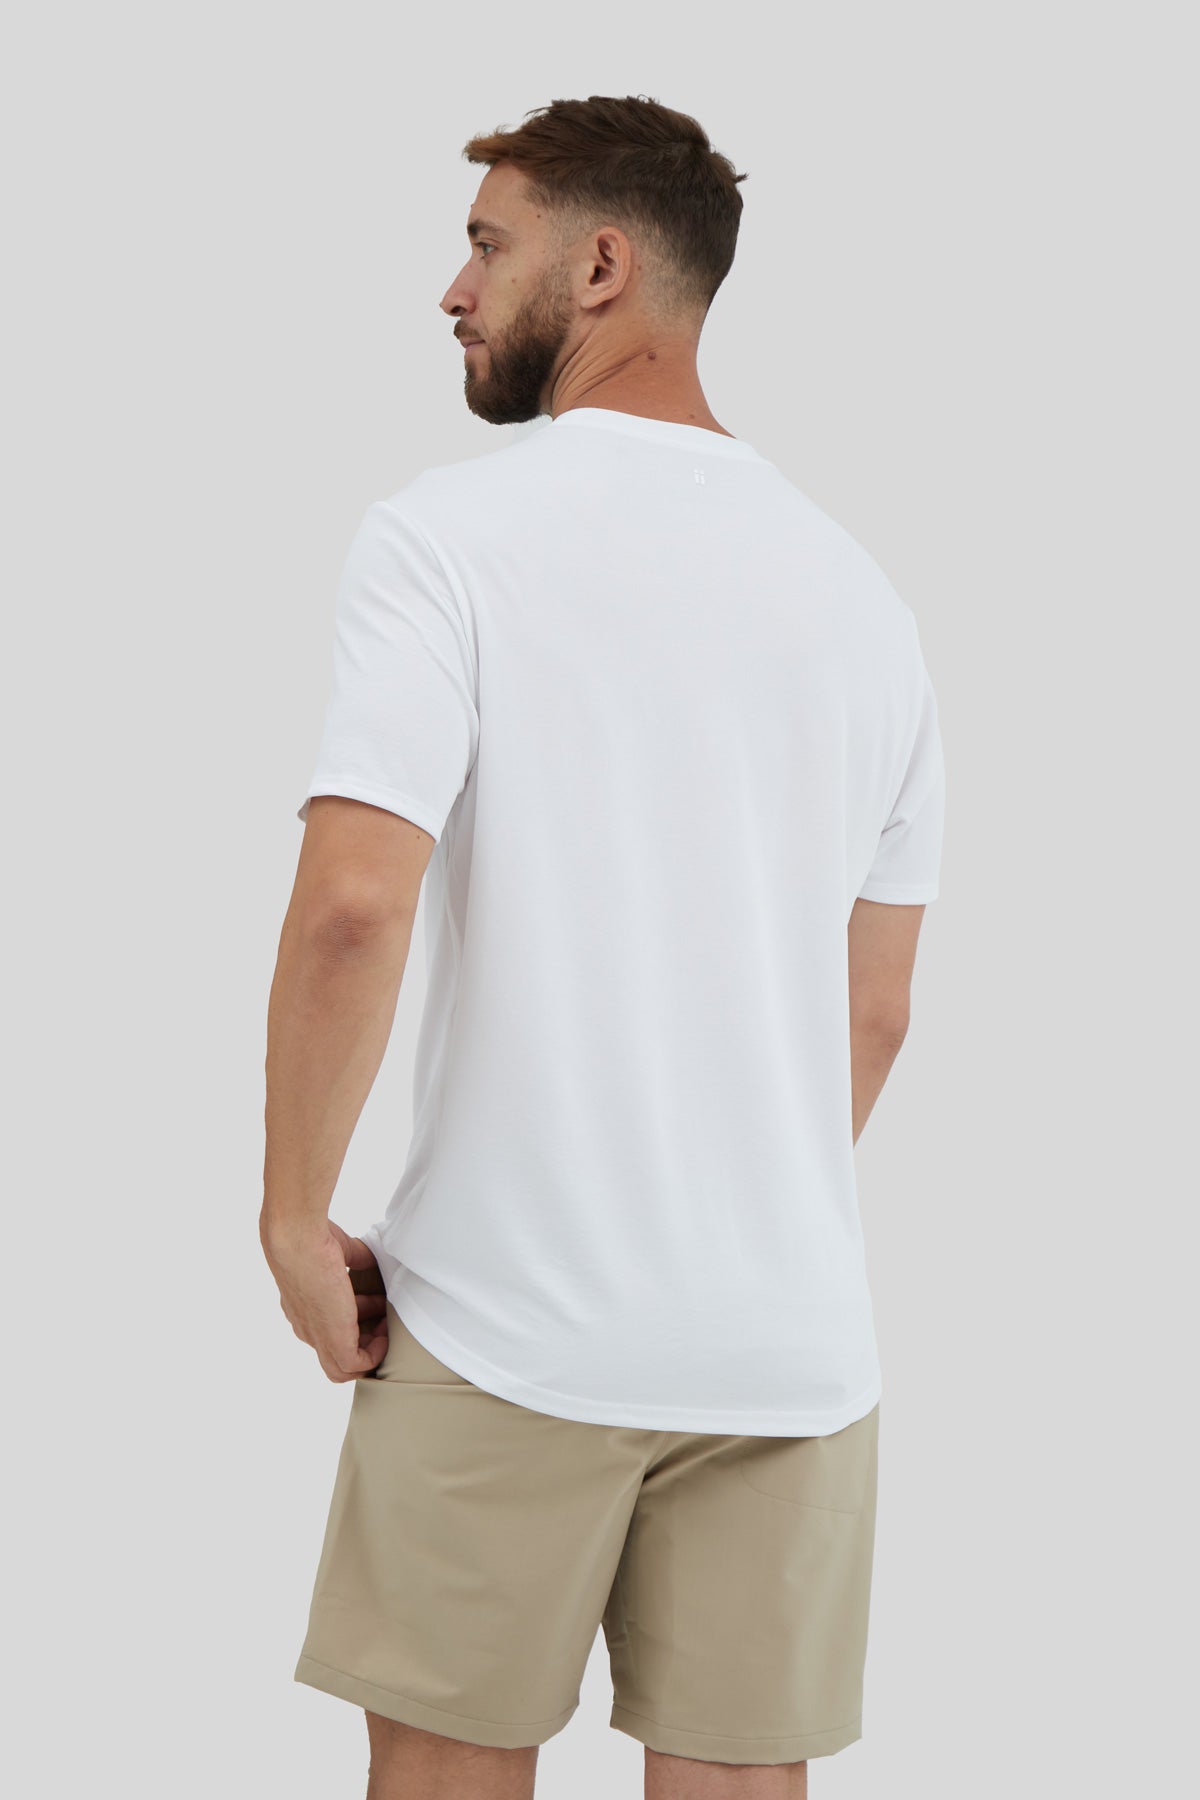 Camiseta hombre blanca | Enrique Alex